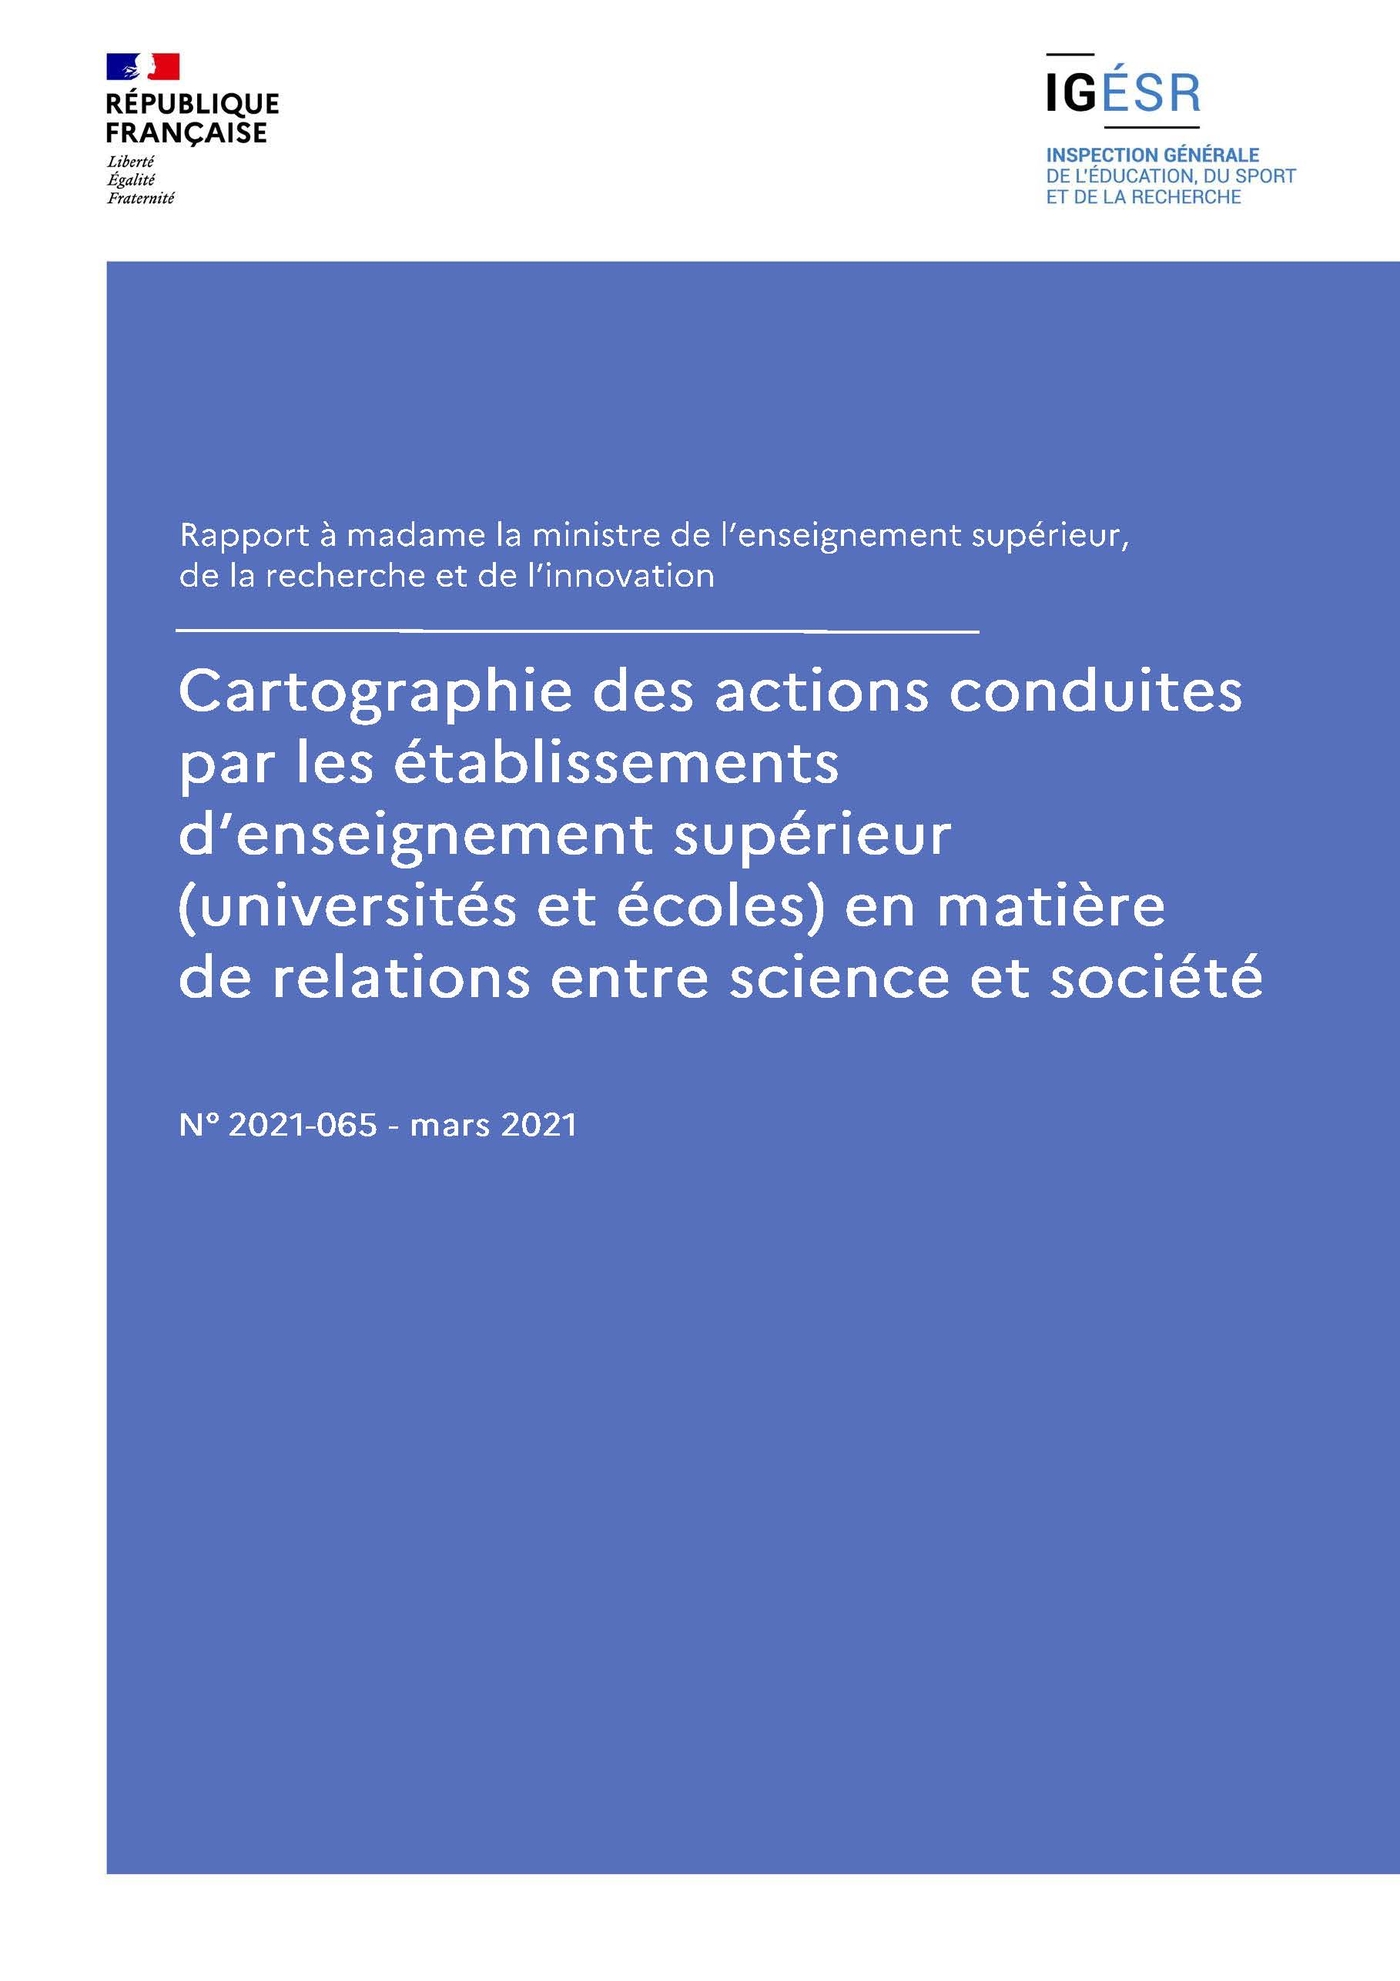 Couverture de IGESR-Rapport-2021-065-Cartographie-actions-etablissements-ESR-relations-science-societe